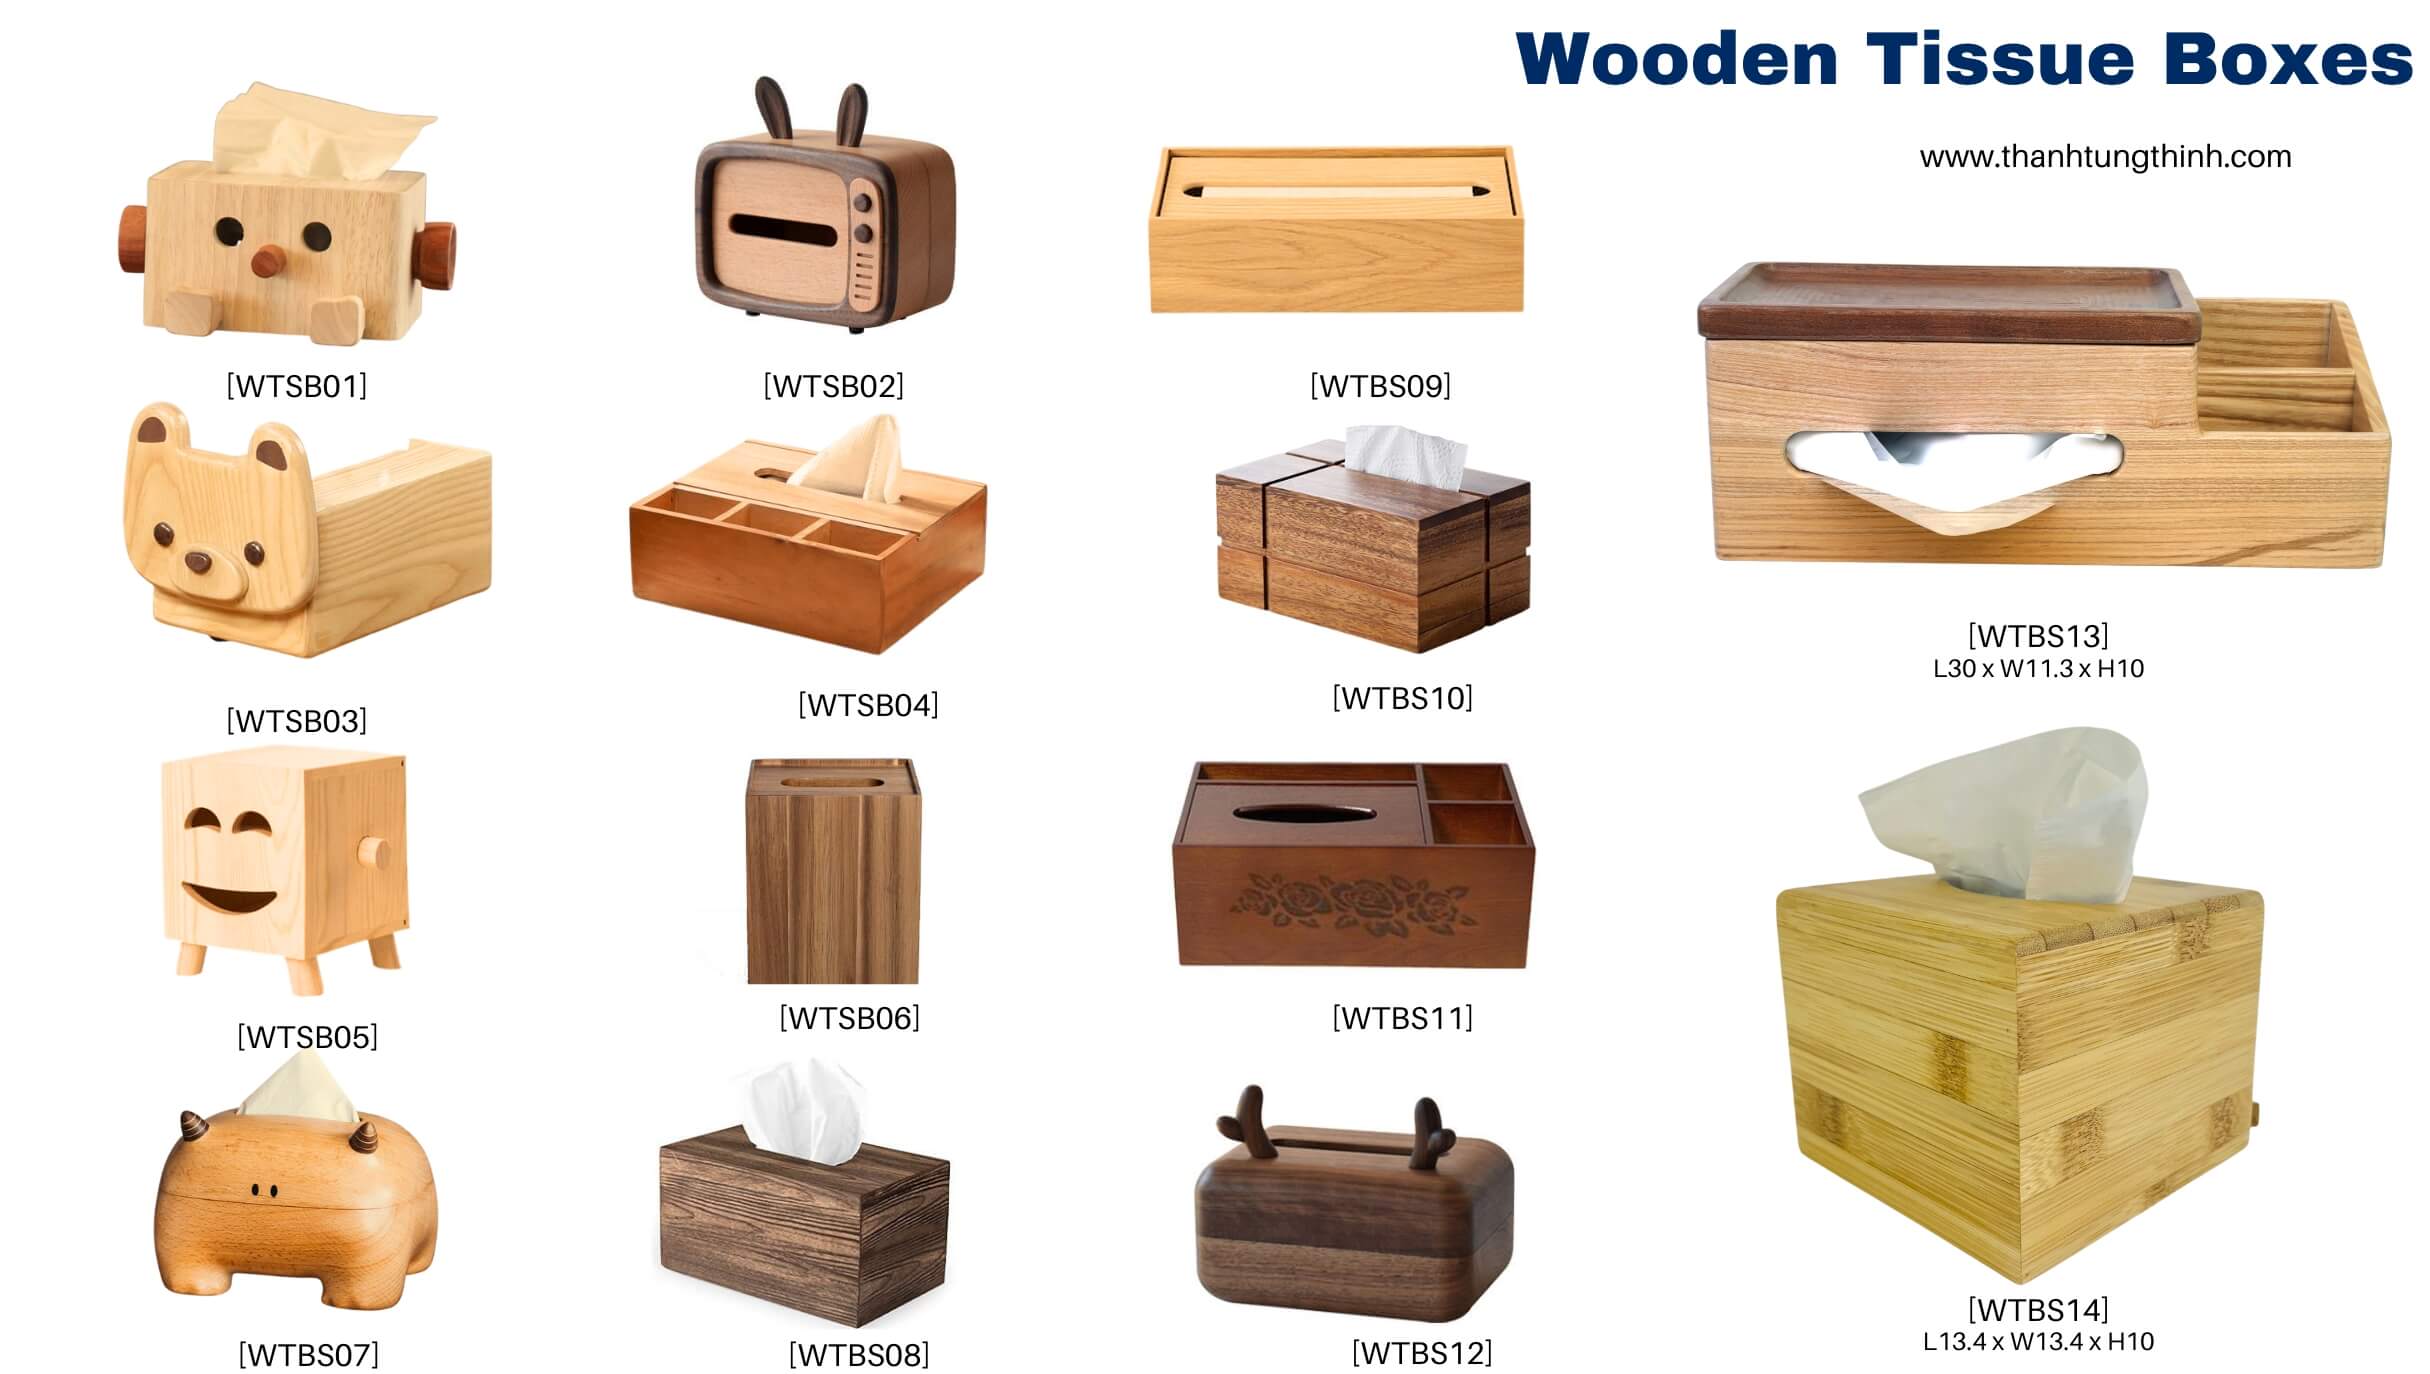 Prestigious wooden tissue box manufacturer in Vietnam